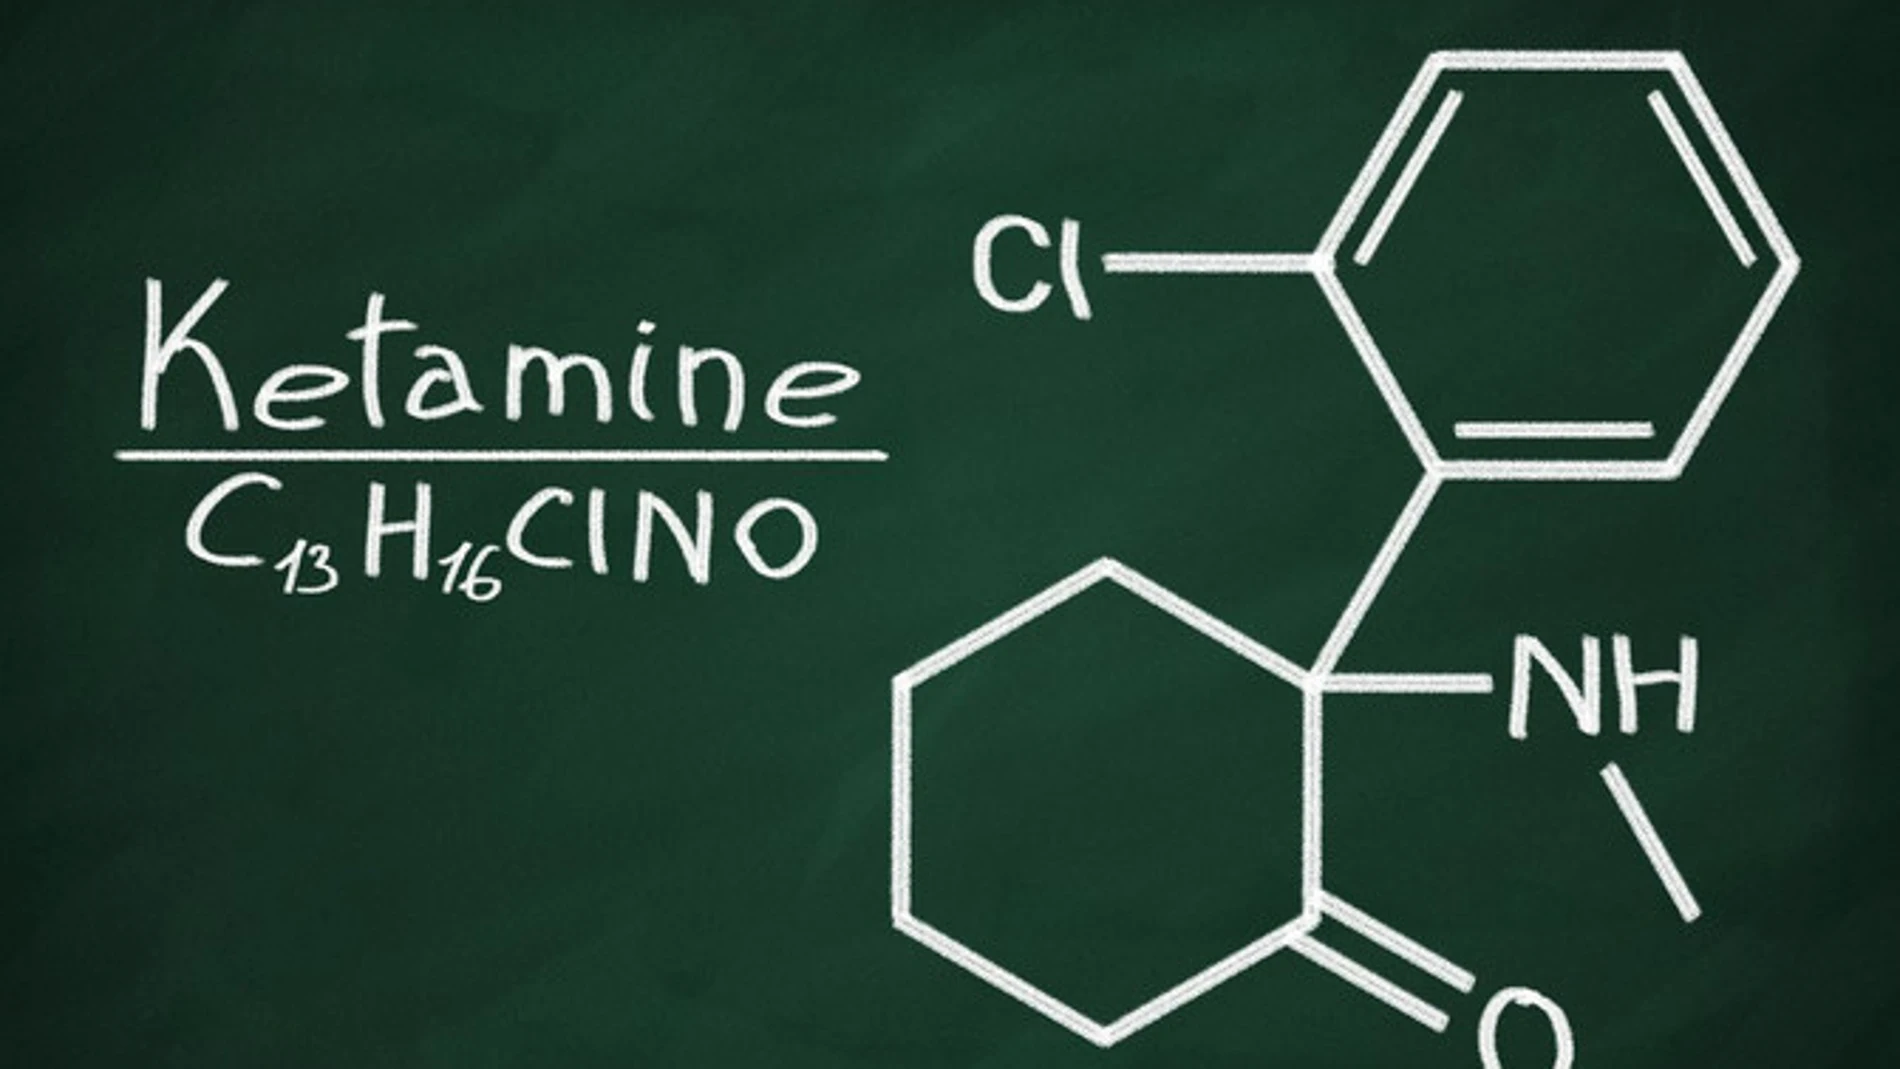 La ketamina es una droga con potencial alucinógeno, utilizada originalmente por sus propiedades anestésicas.